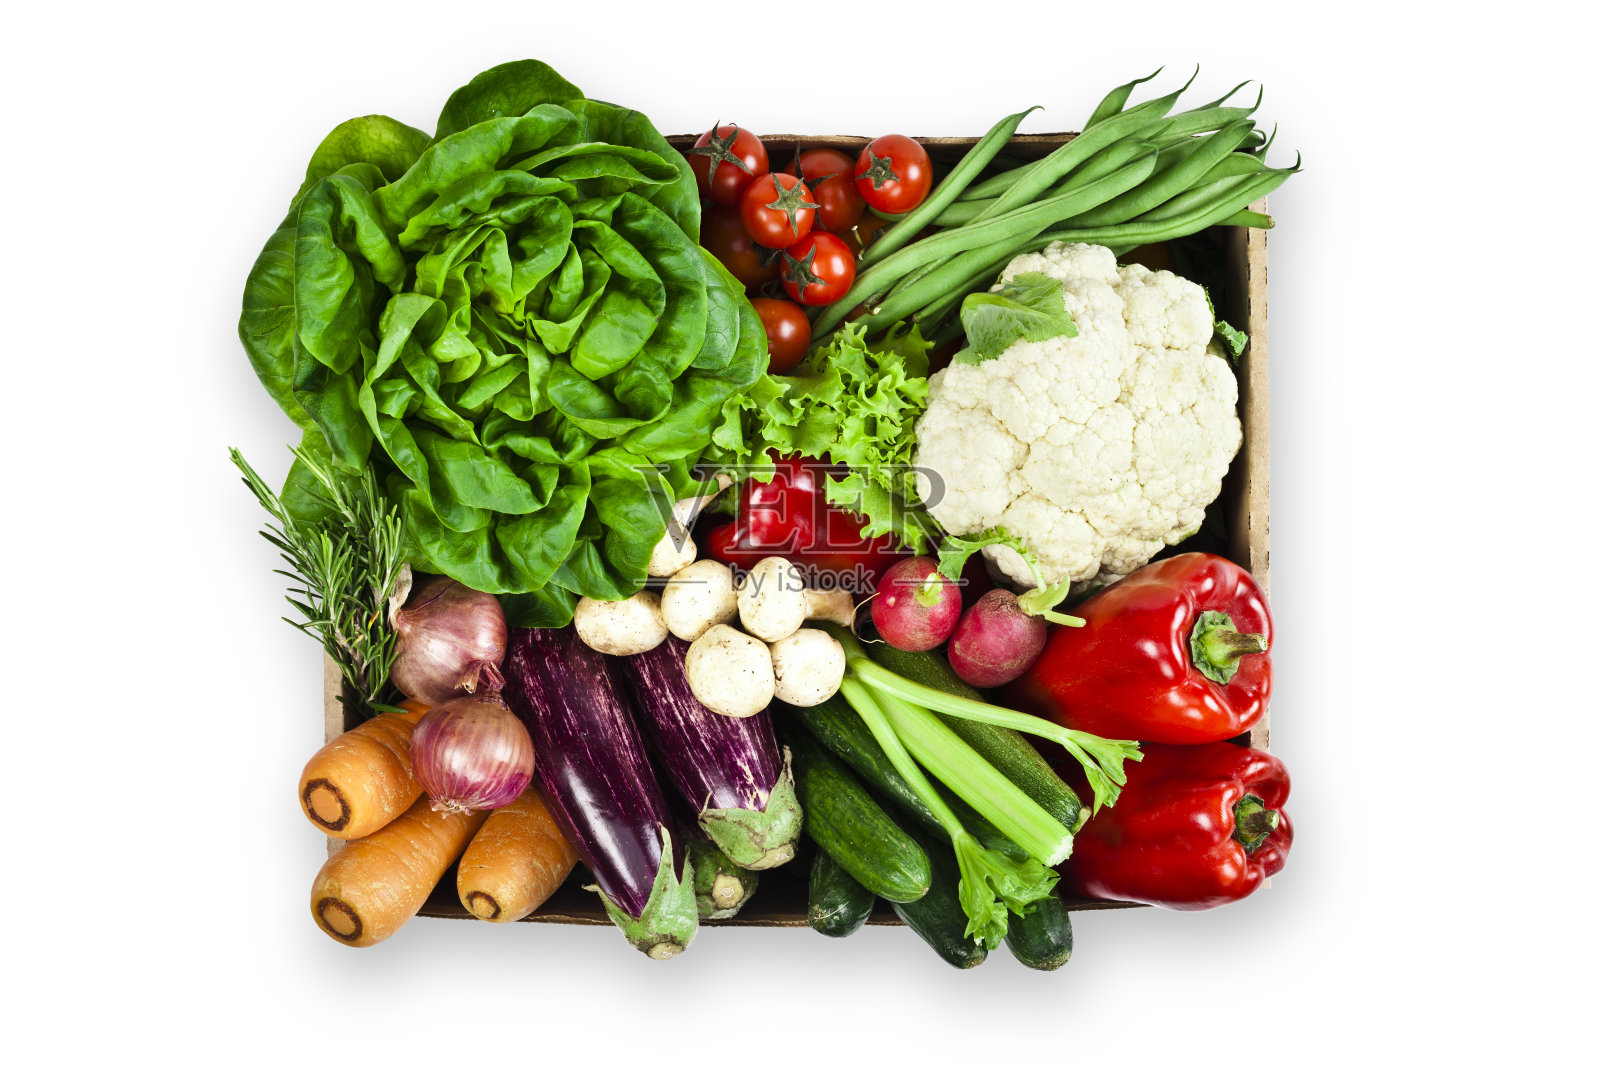 白色背景下装满各种有机蔬菜的板条箱照片摄影图片